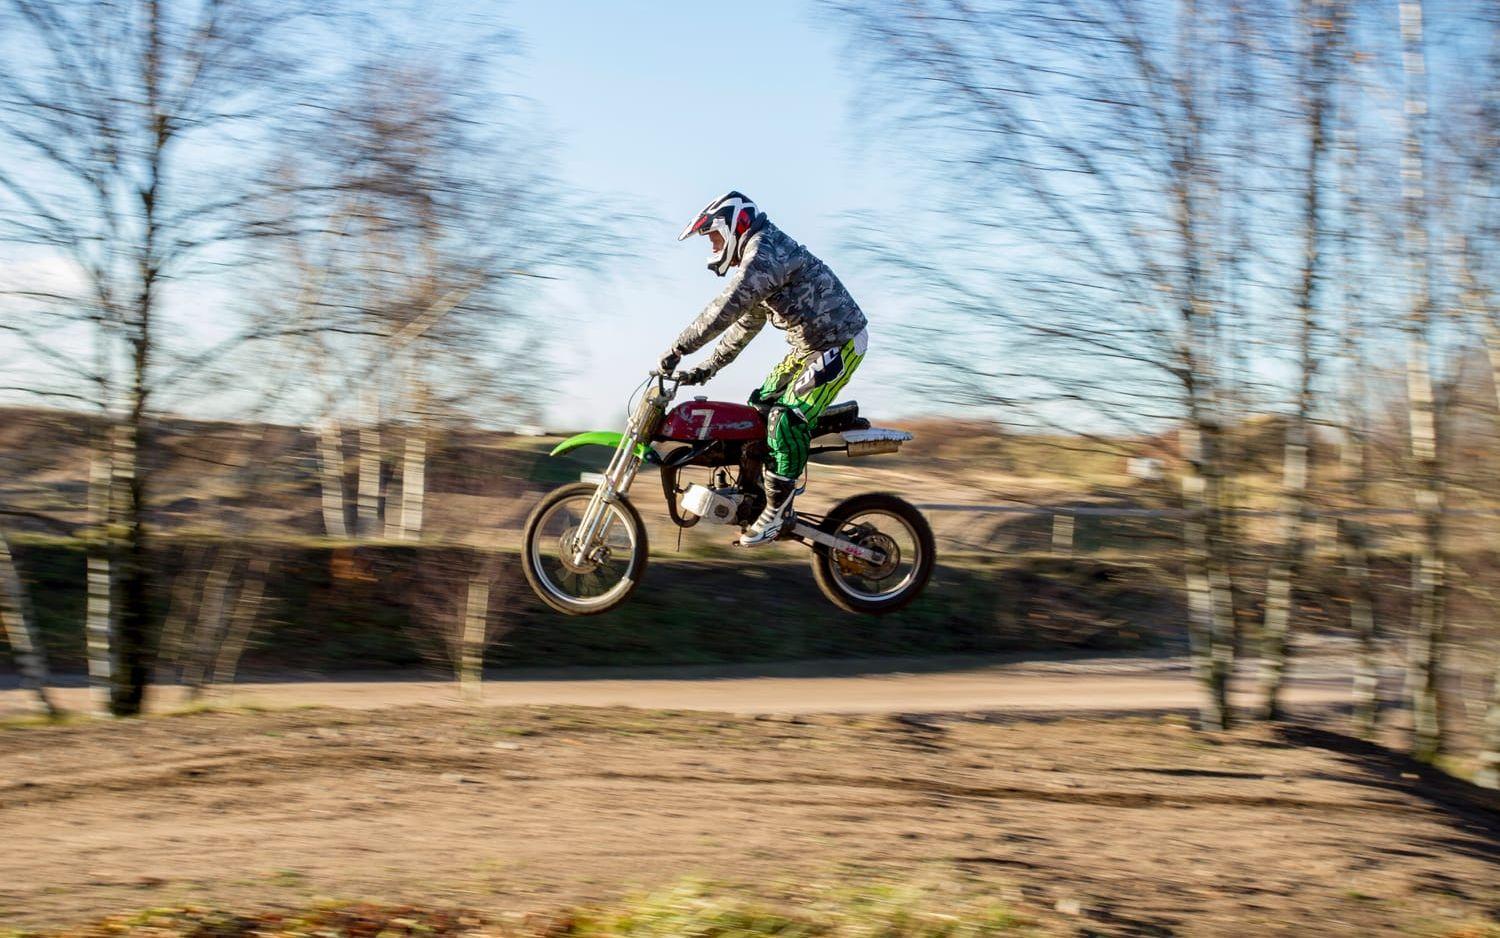 Moppehopp. ”Det är många motocrossförare som är med, det är en trevlig tävling” säger Daniel Widell som hoppar med moppen på mopperacet i Veinge. Bild: Kenny Hjälte